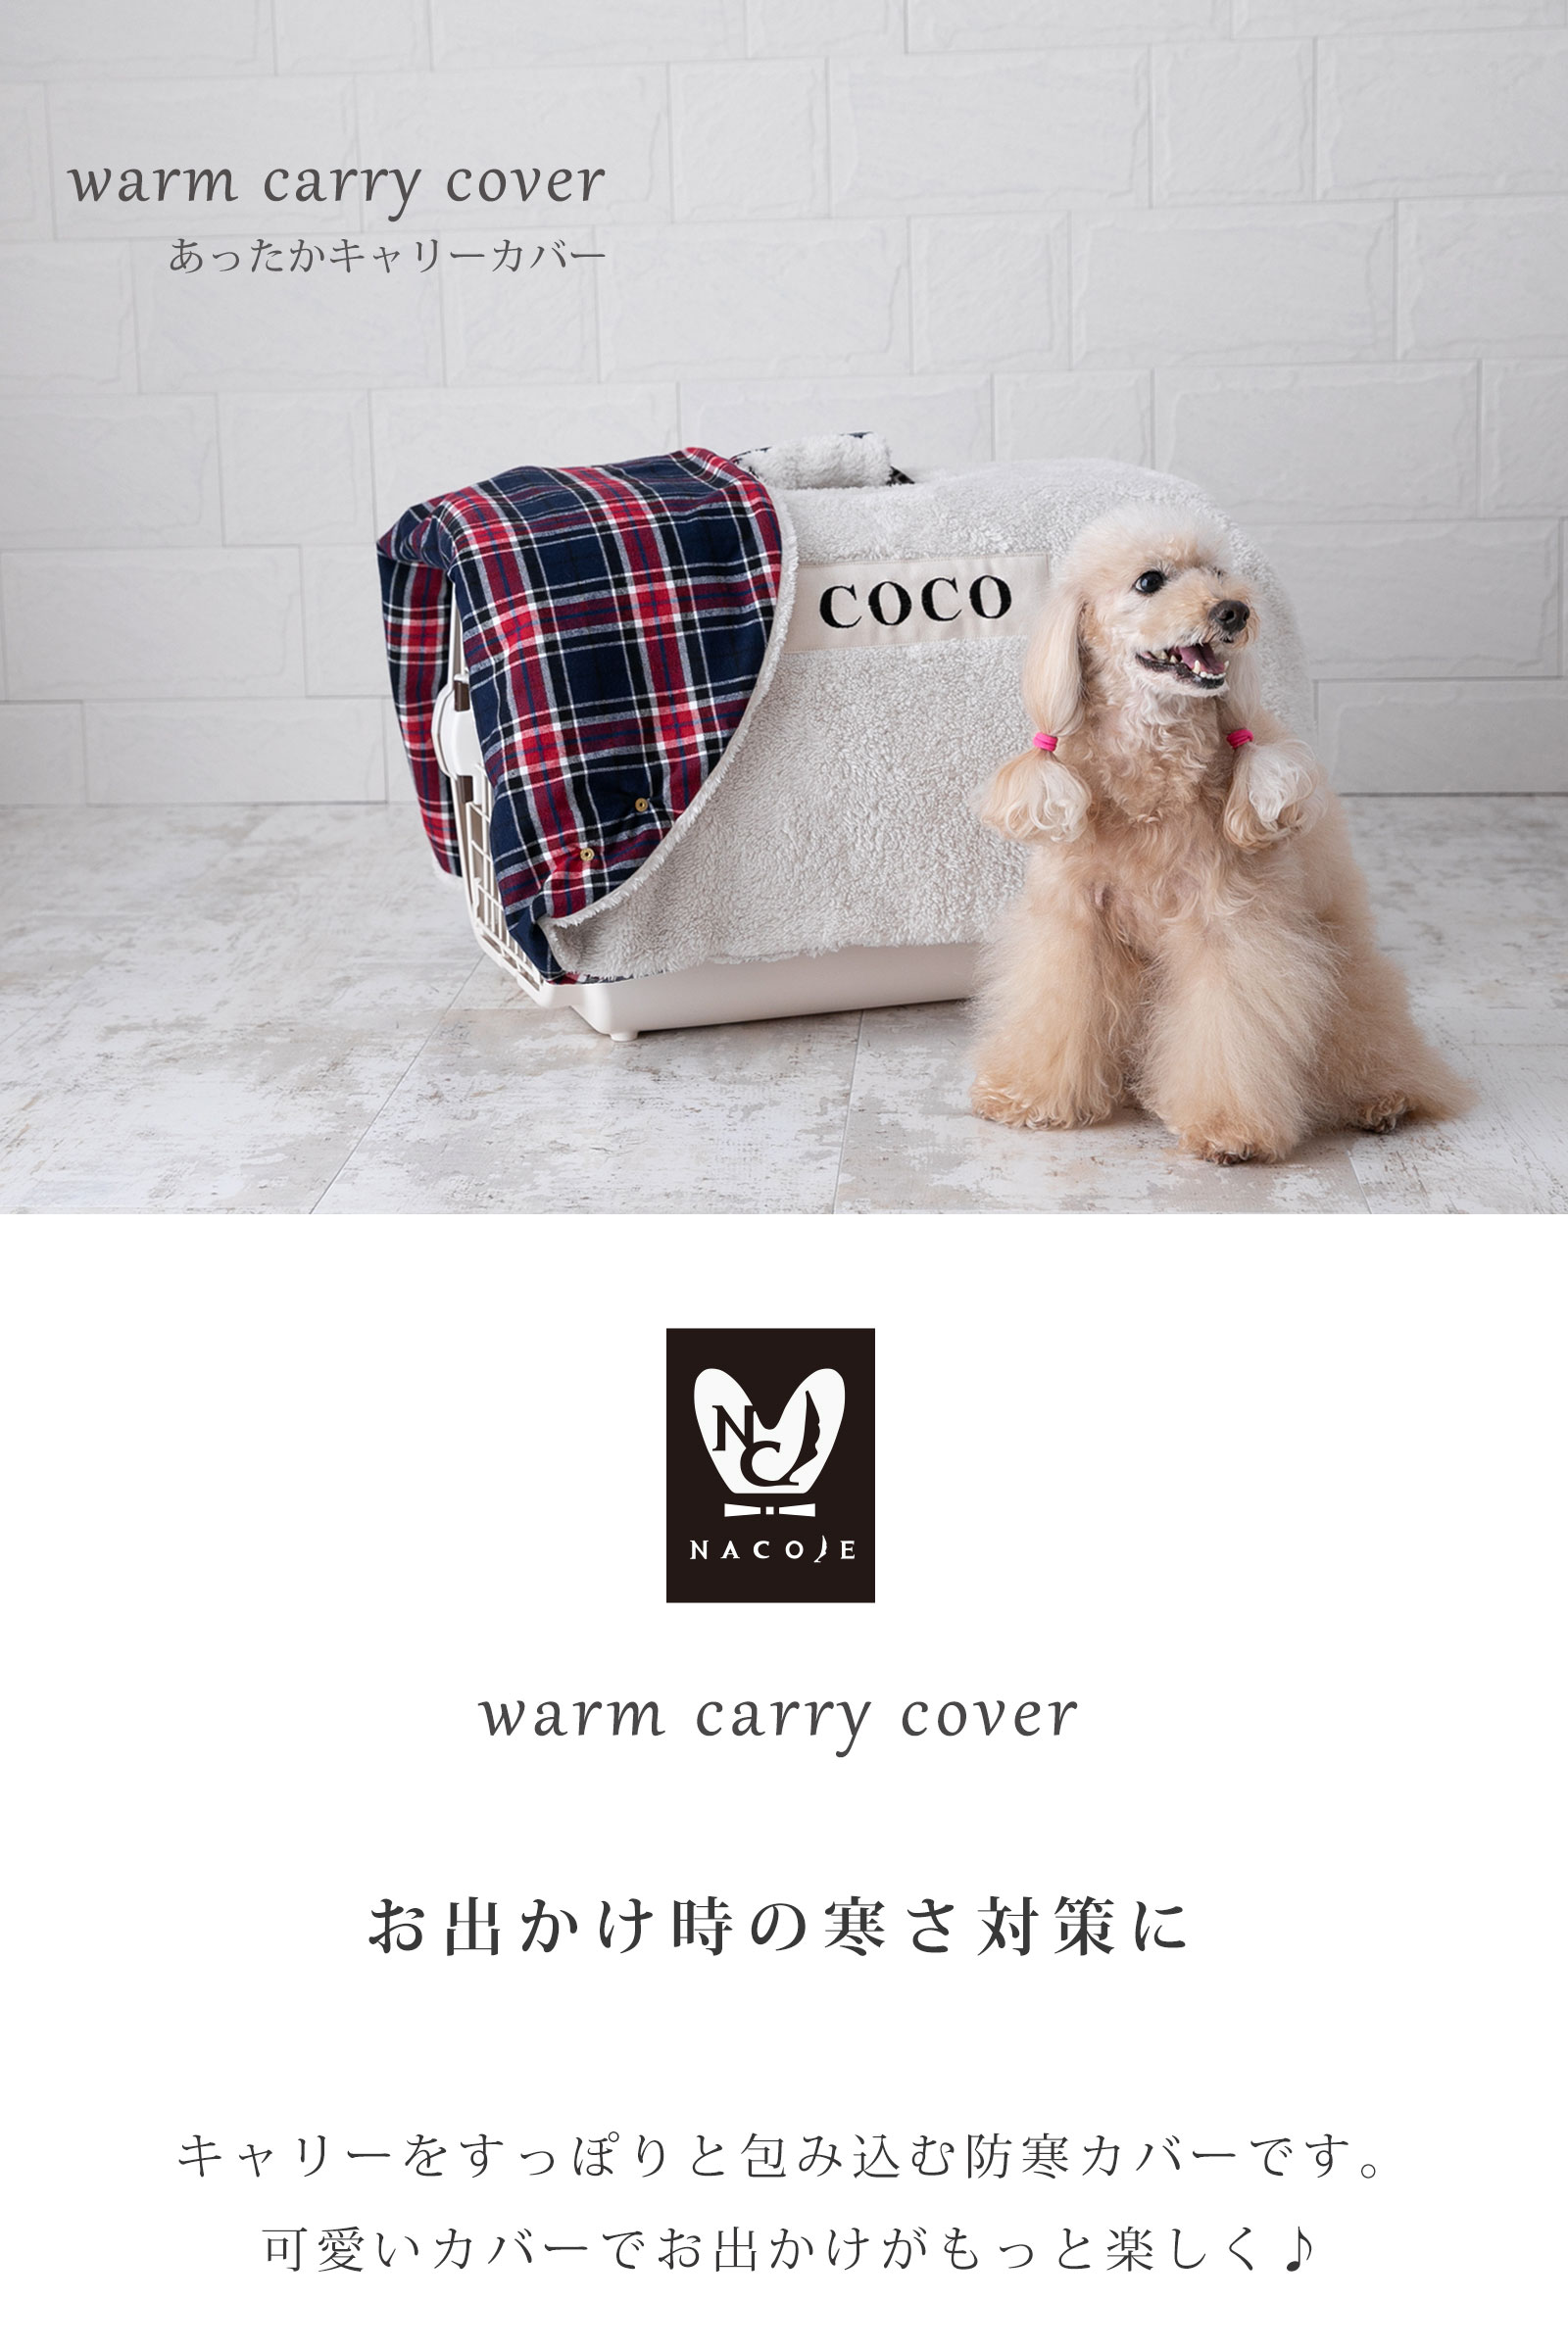 日本製 キャリー用カバー キャリーケース 犬 猫 防寒 冬